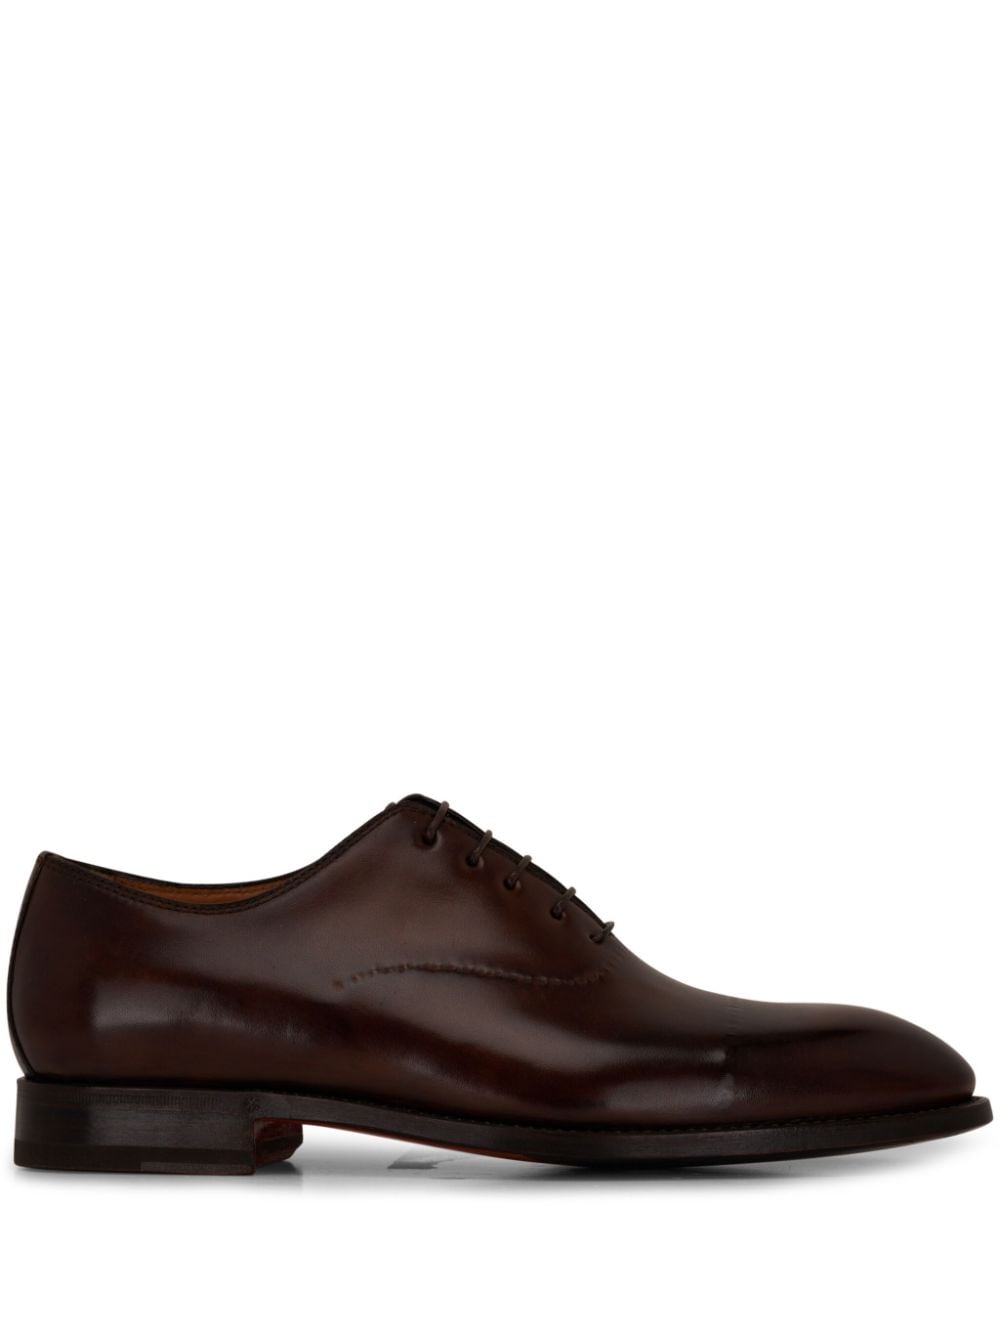 Bontoni Vittorio leather Oxford shoes Brown